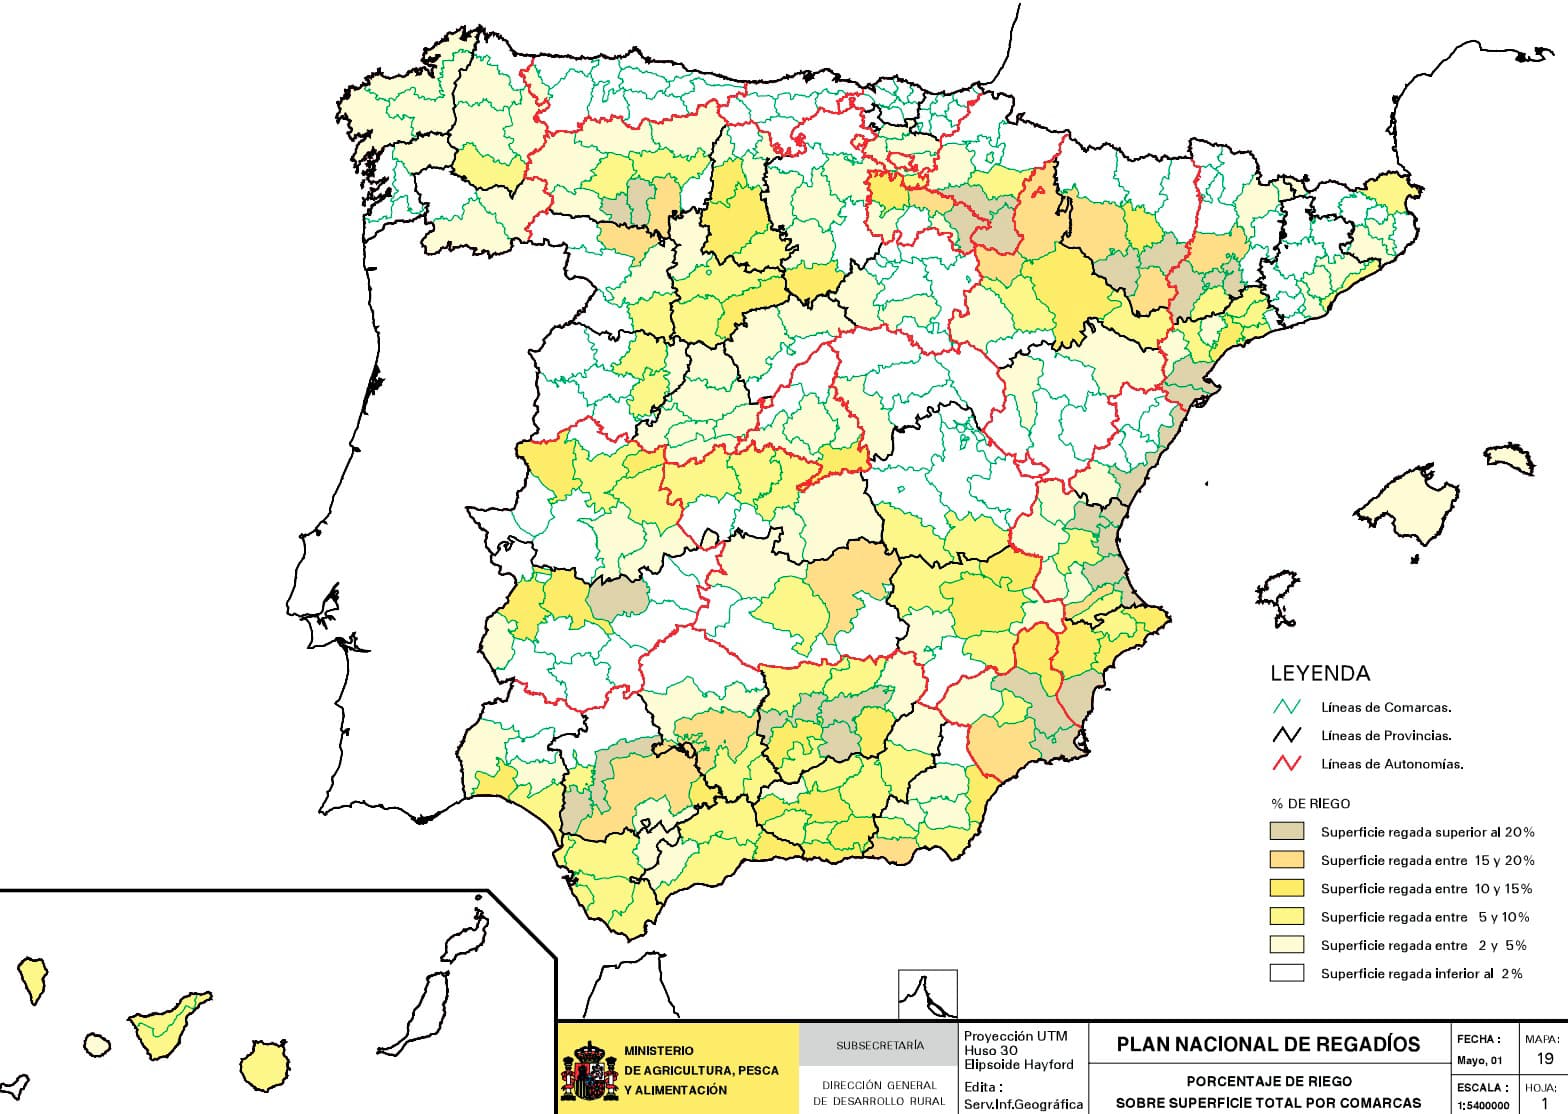 Porcentaje de riego sobre superficie total por comarcas. Ministerio de Agricultura